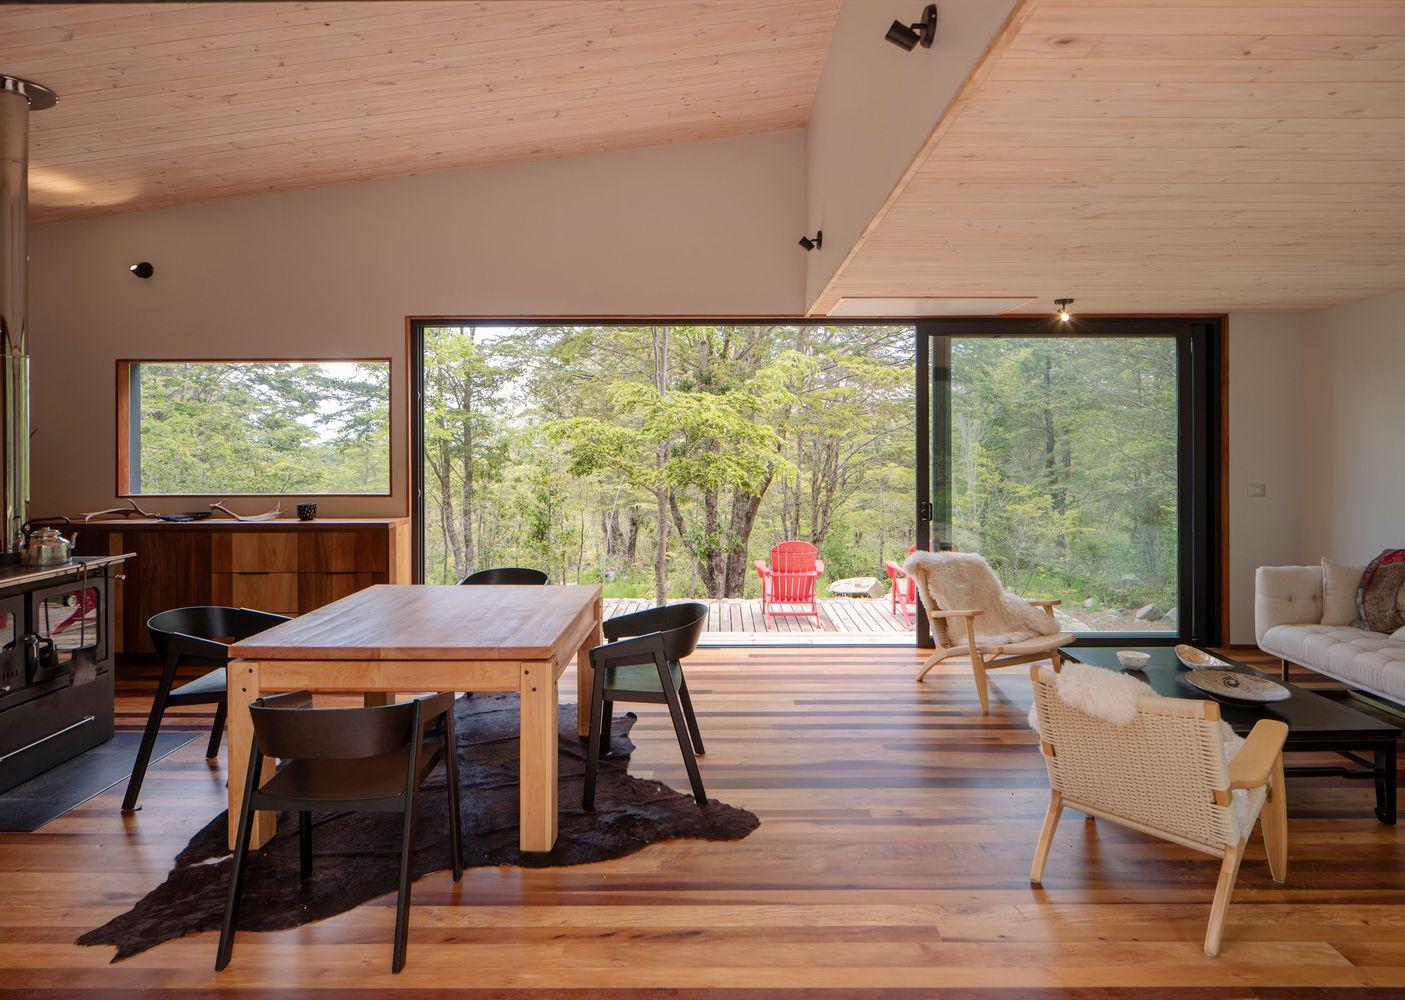 Diseño de una casa de madera con ventanas panorámicas